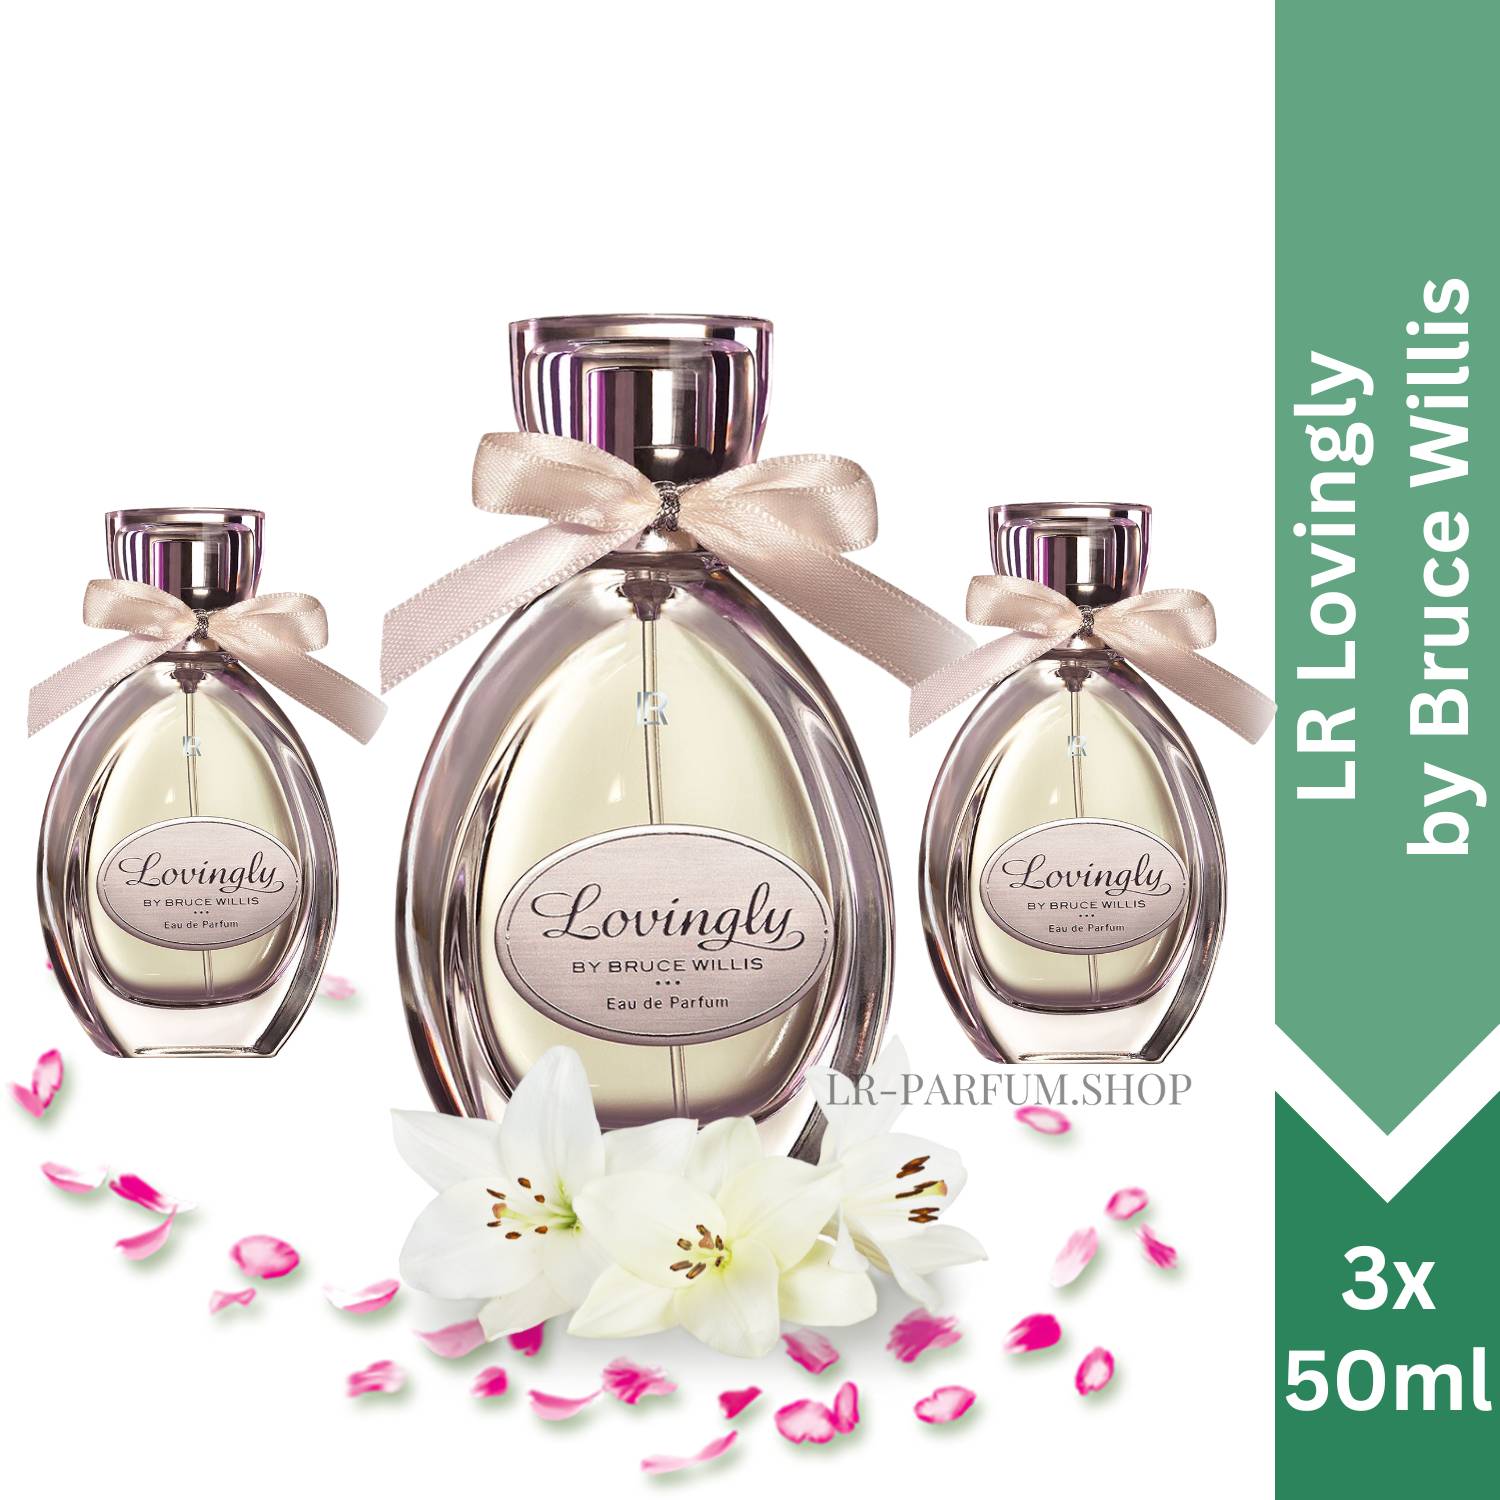 LR Lovingly - by Bruce Willis Eau de Parfum, 3er Pack (3x50ml) - LR-Parfum.shop